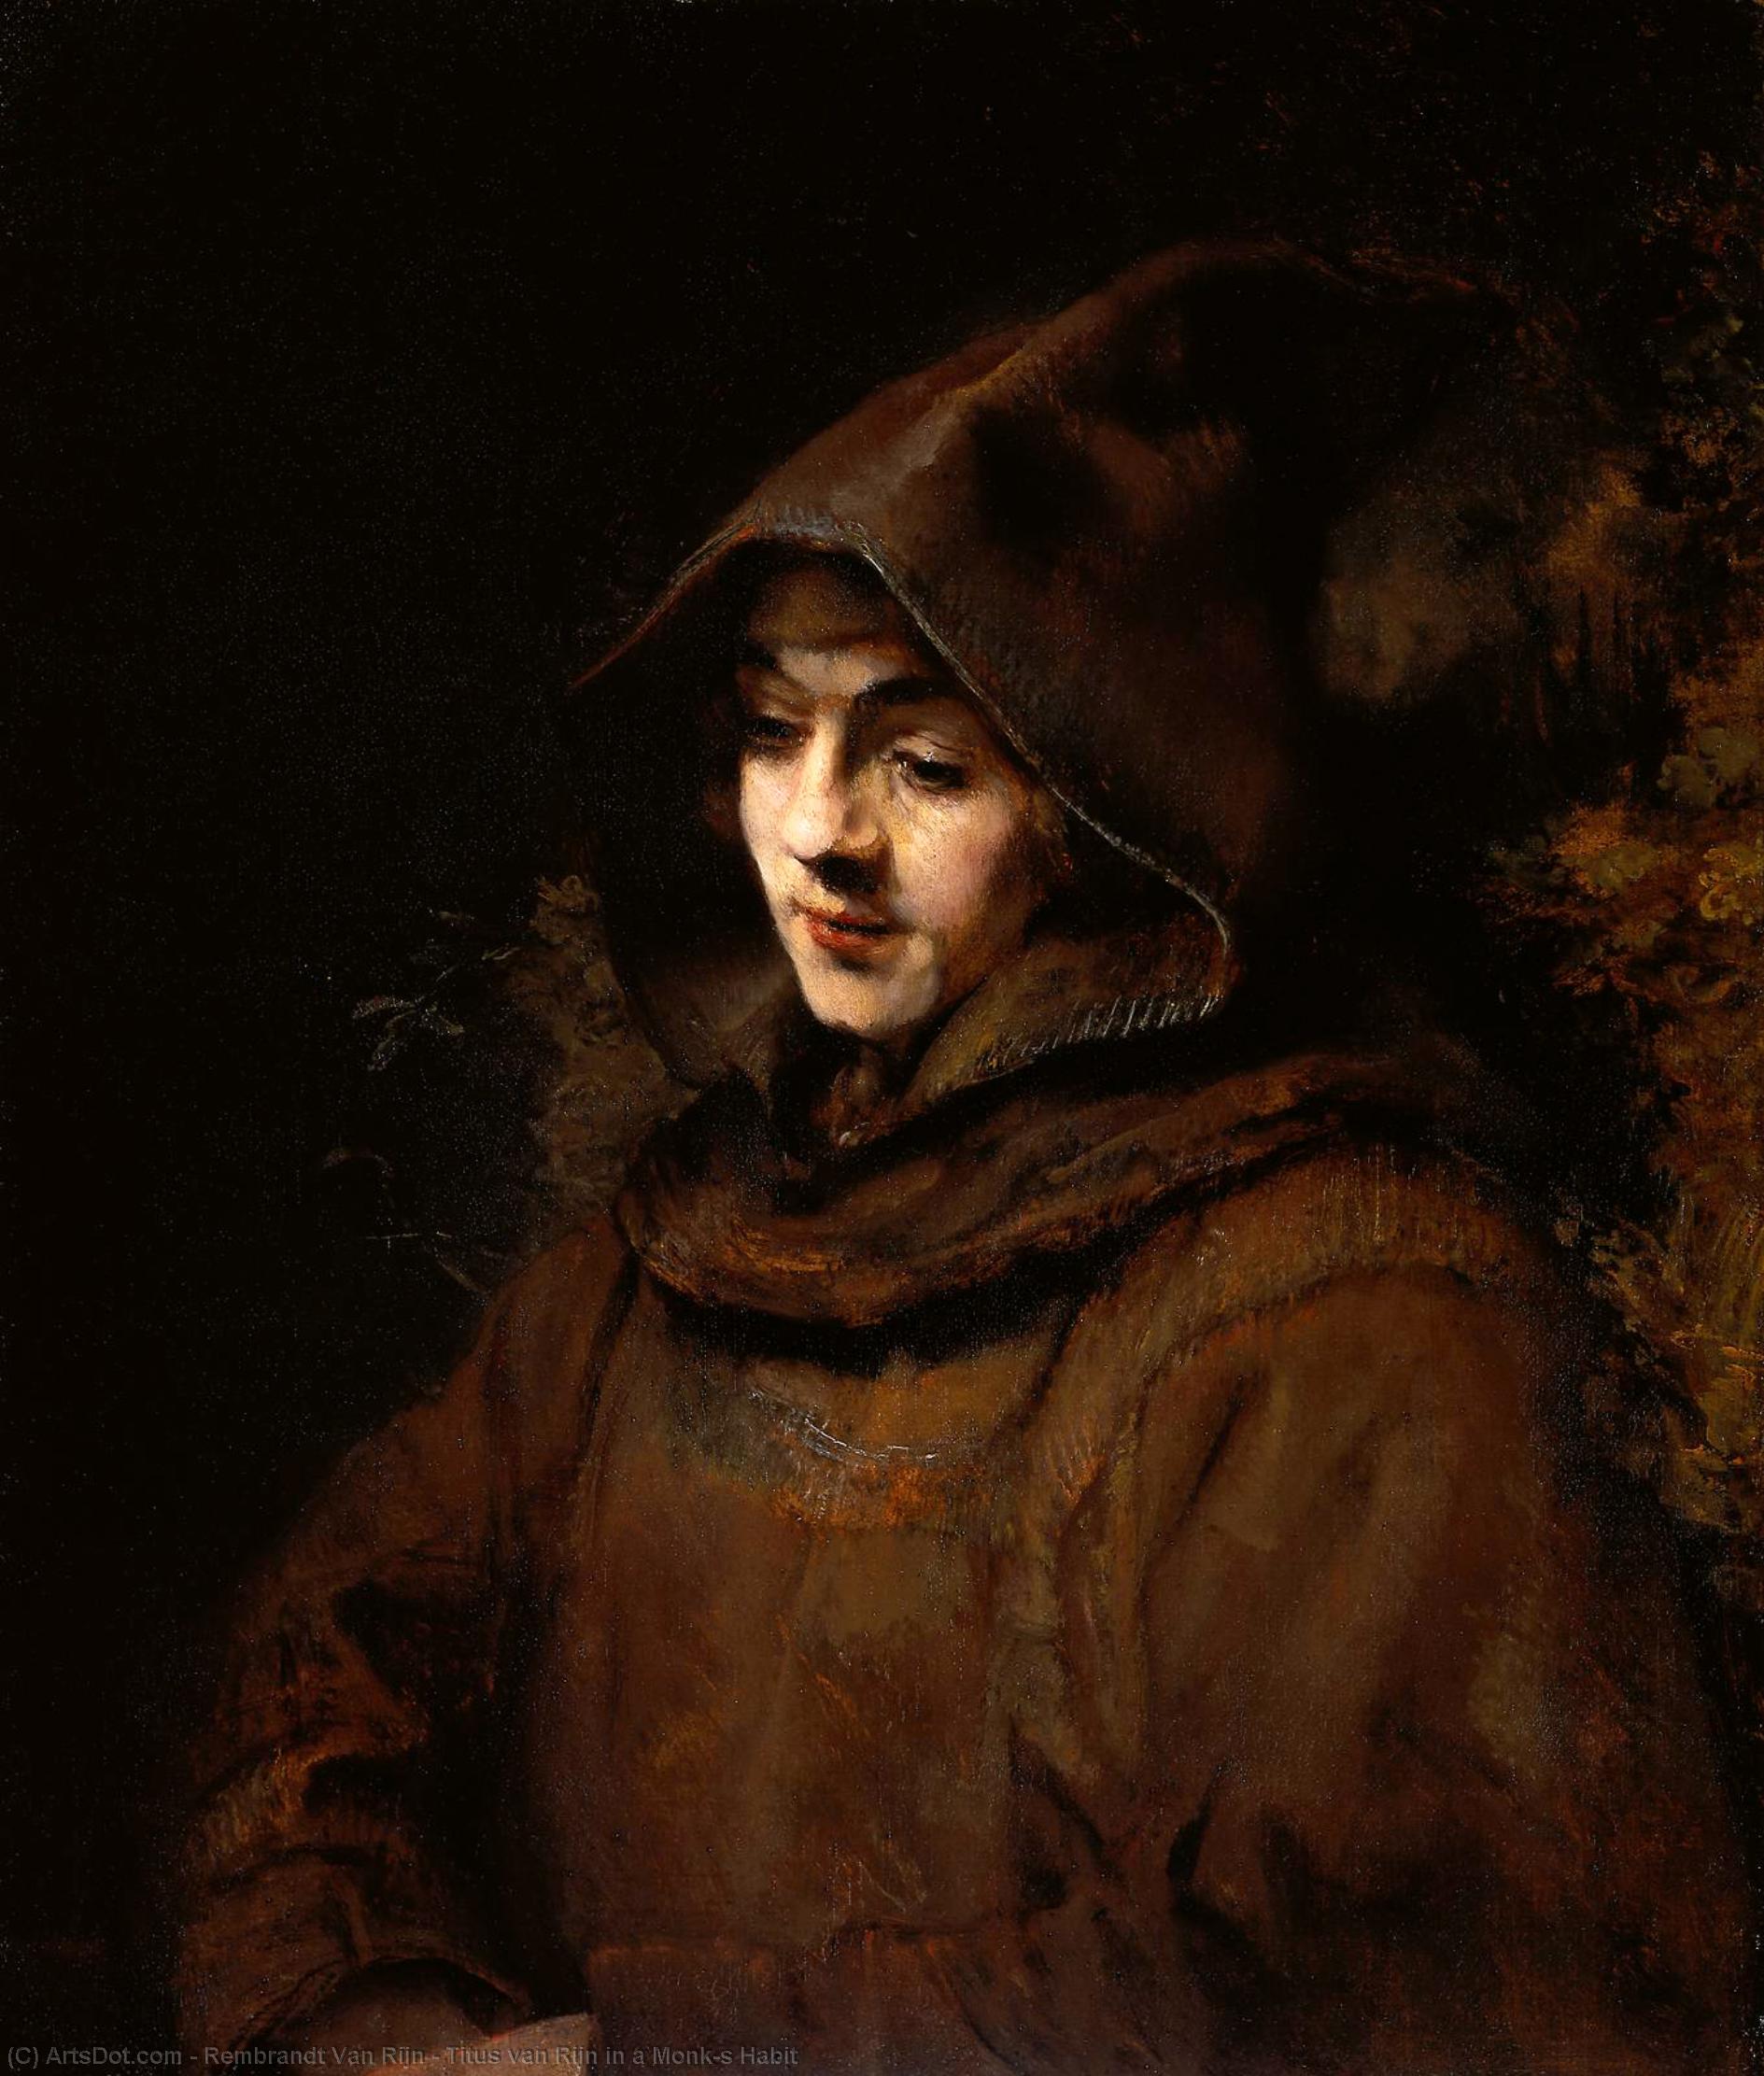 WikiOO.org - 백과 사전 - 회화, 삽화 Rembrandt Van Rijn - Titus van Rijn in a Monk's Habit